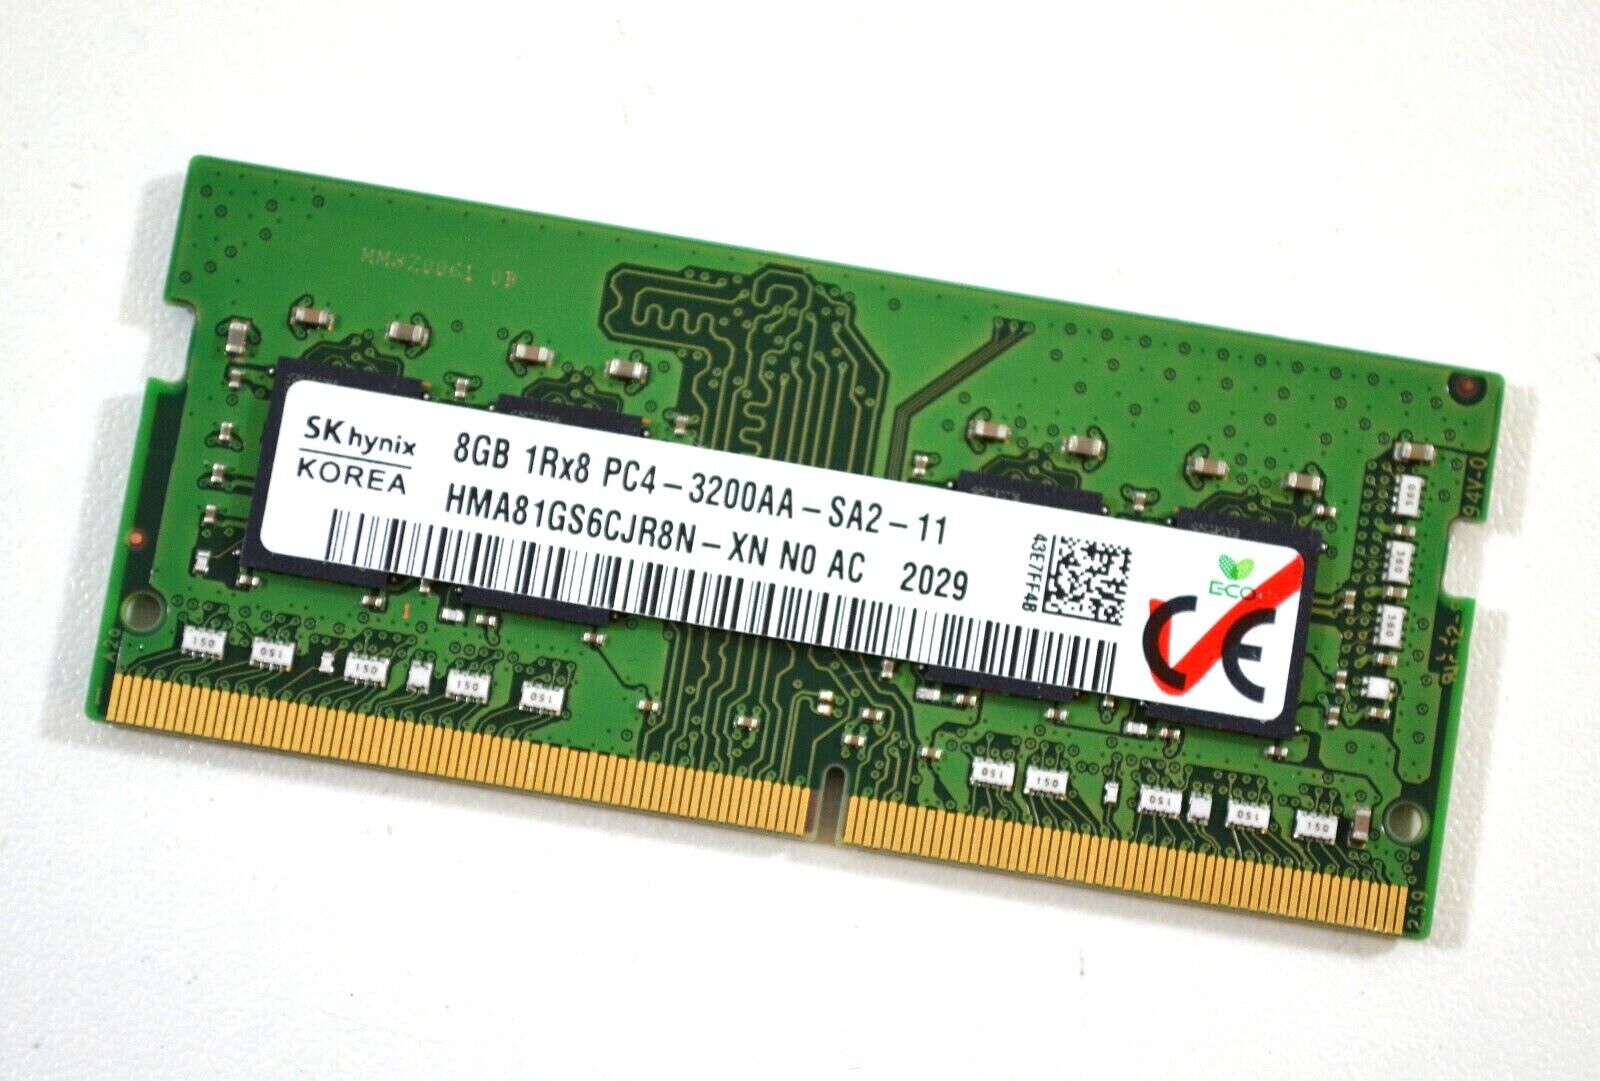 SK hynix HMA851S6DJR6N-XN Speicher RAM Modul, 16 (88) GB